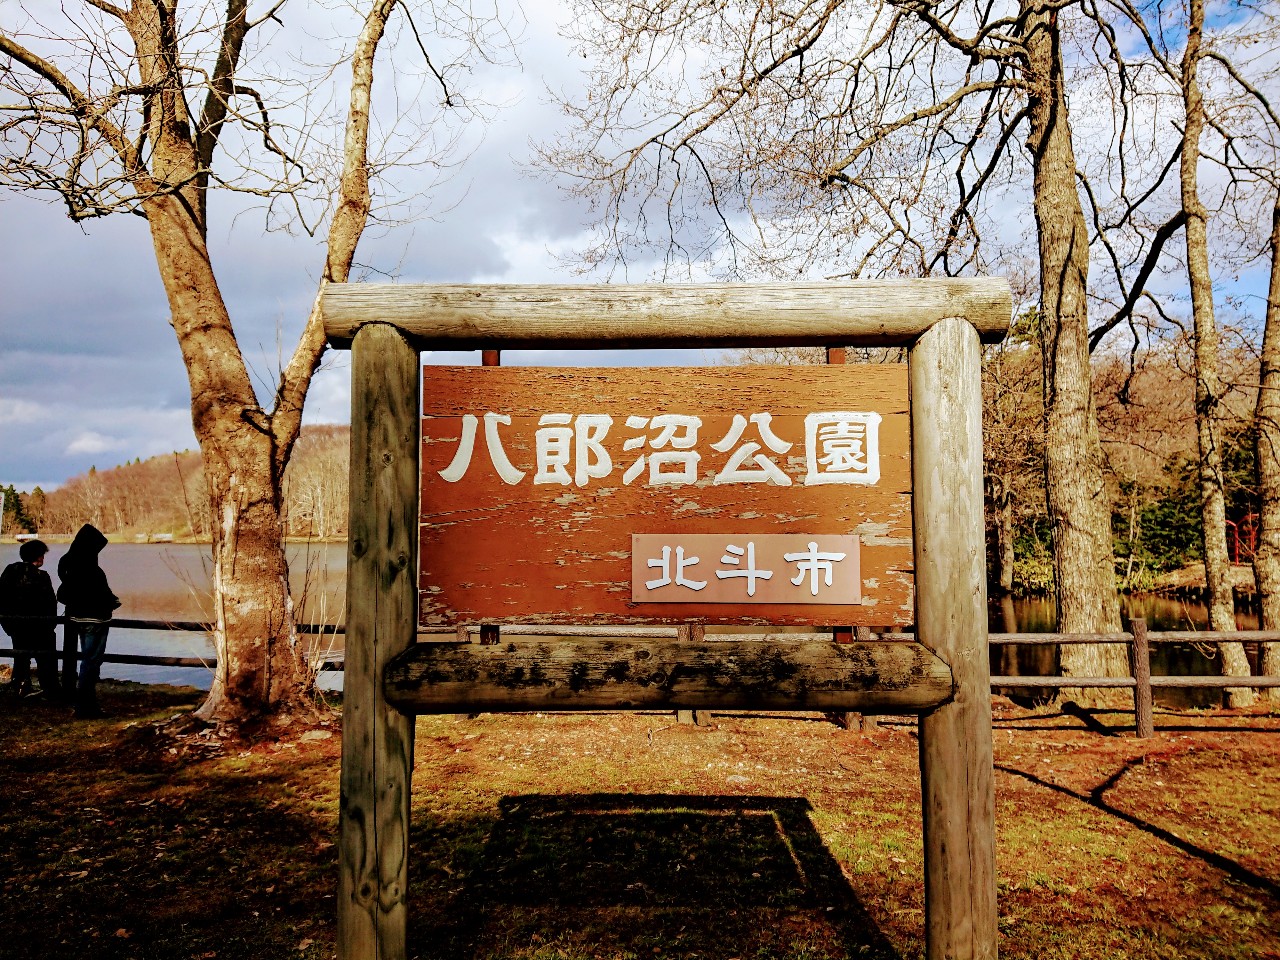 函館市 北斗市の 八郎沼公園 のはじまりは人工池だったことを知っていましたか 号外net 函館市 渡島支庁